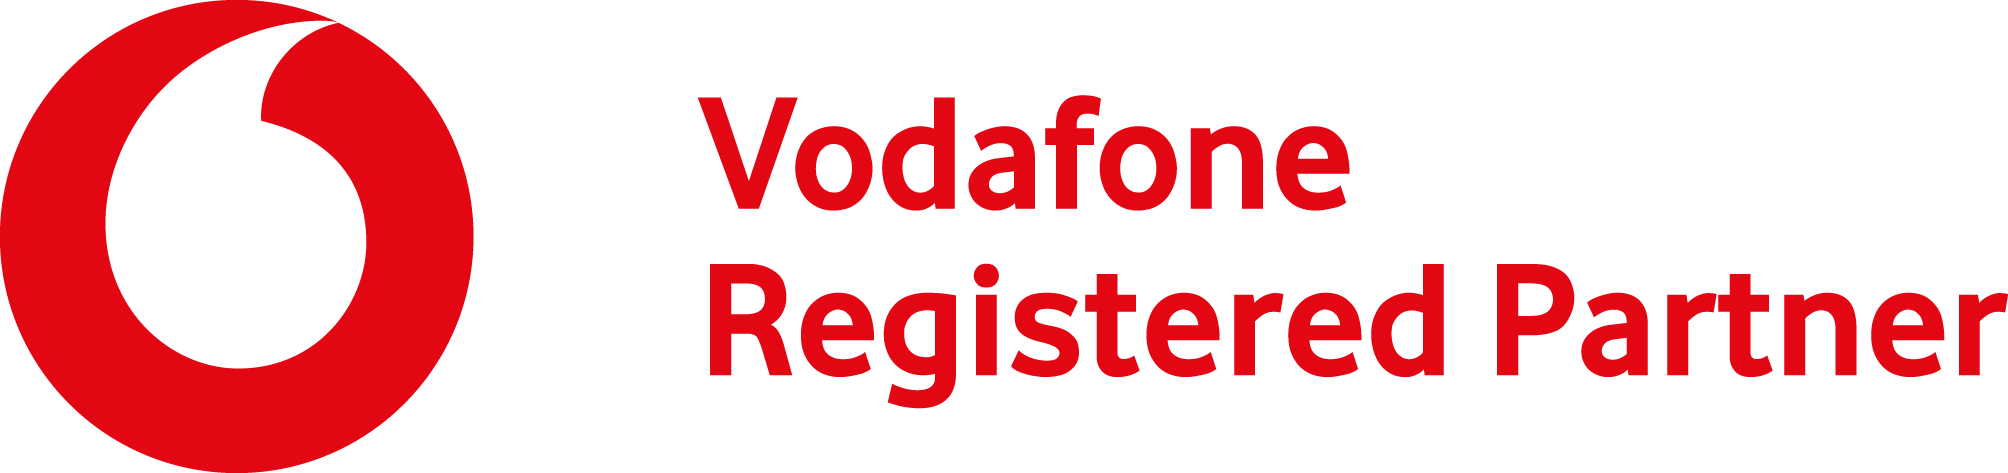 Vodafone ist Partner von Richter Learning Systems